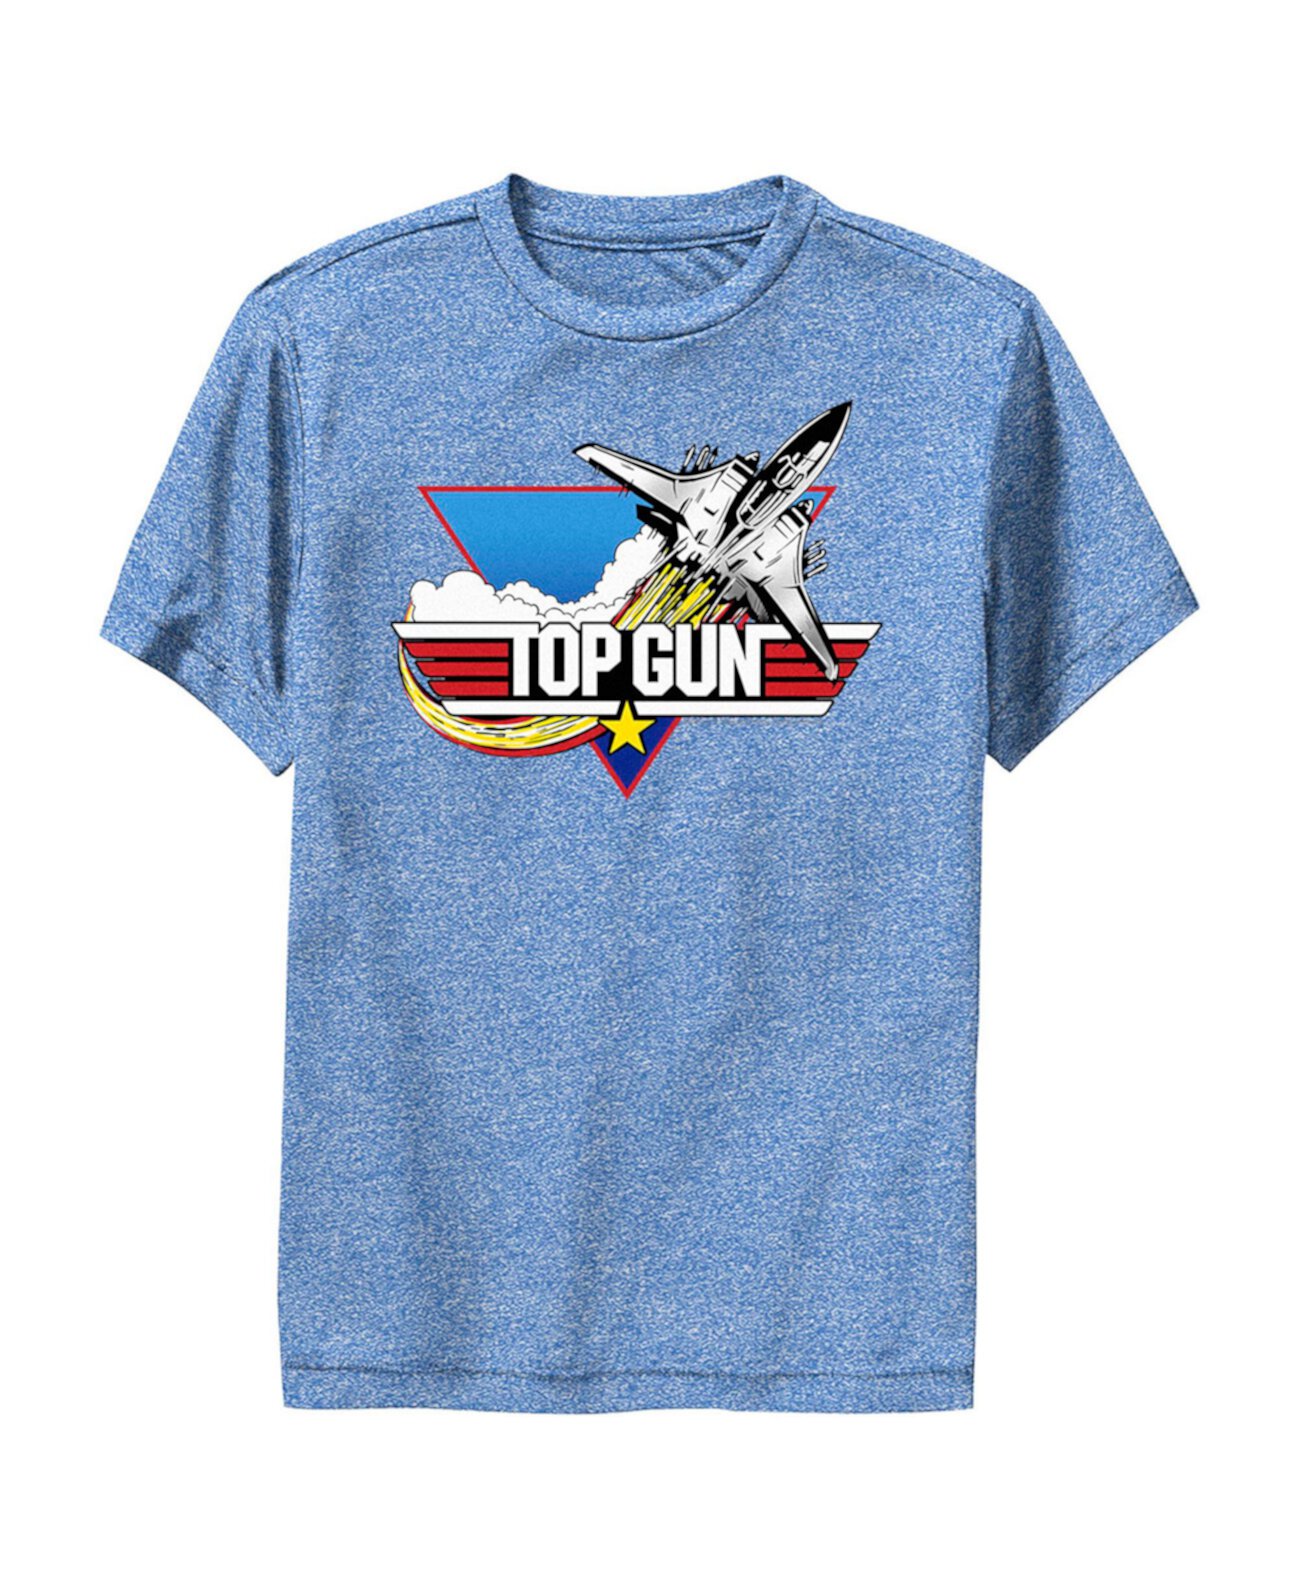 Детская футболка с логотипом Top Gun Fighter Jet для мальчиков Paramount